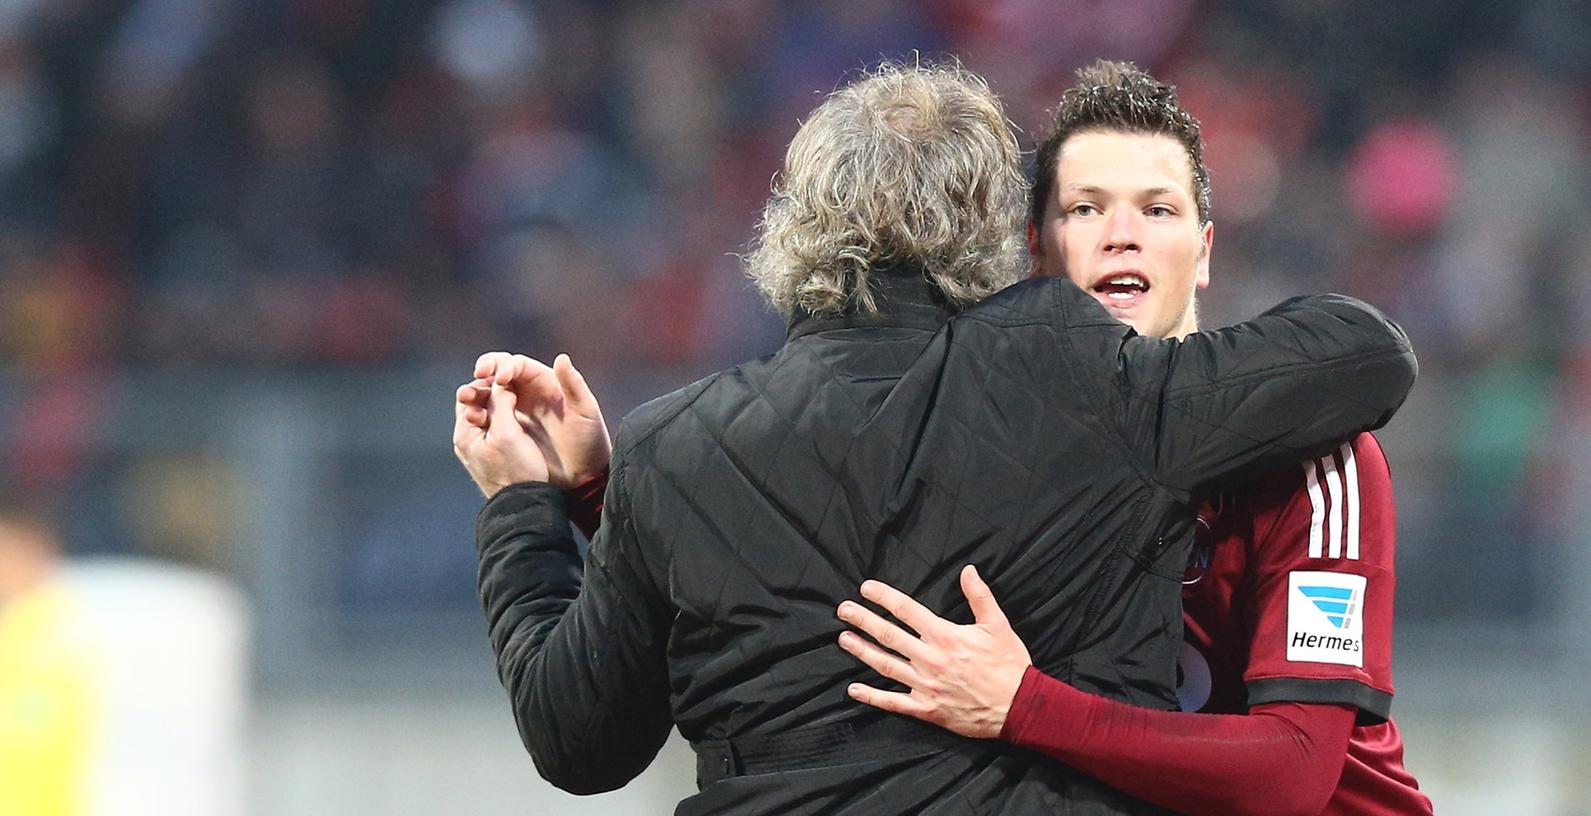 Club-Stürmer Daniel Ginczek befindet sich wieder im Aufwind und freut sich auf das Derby gegen den FC Bayern München.